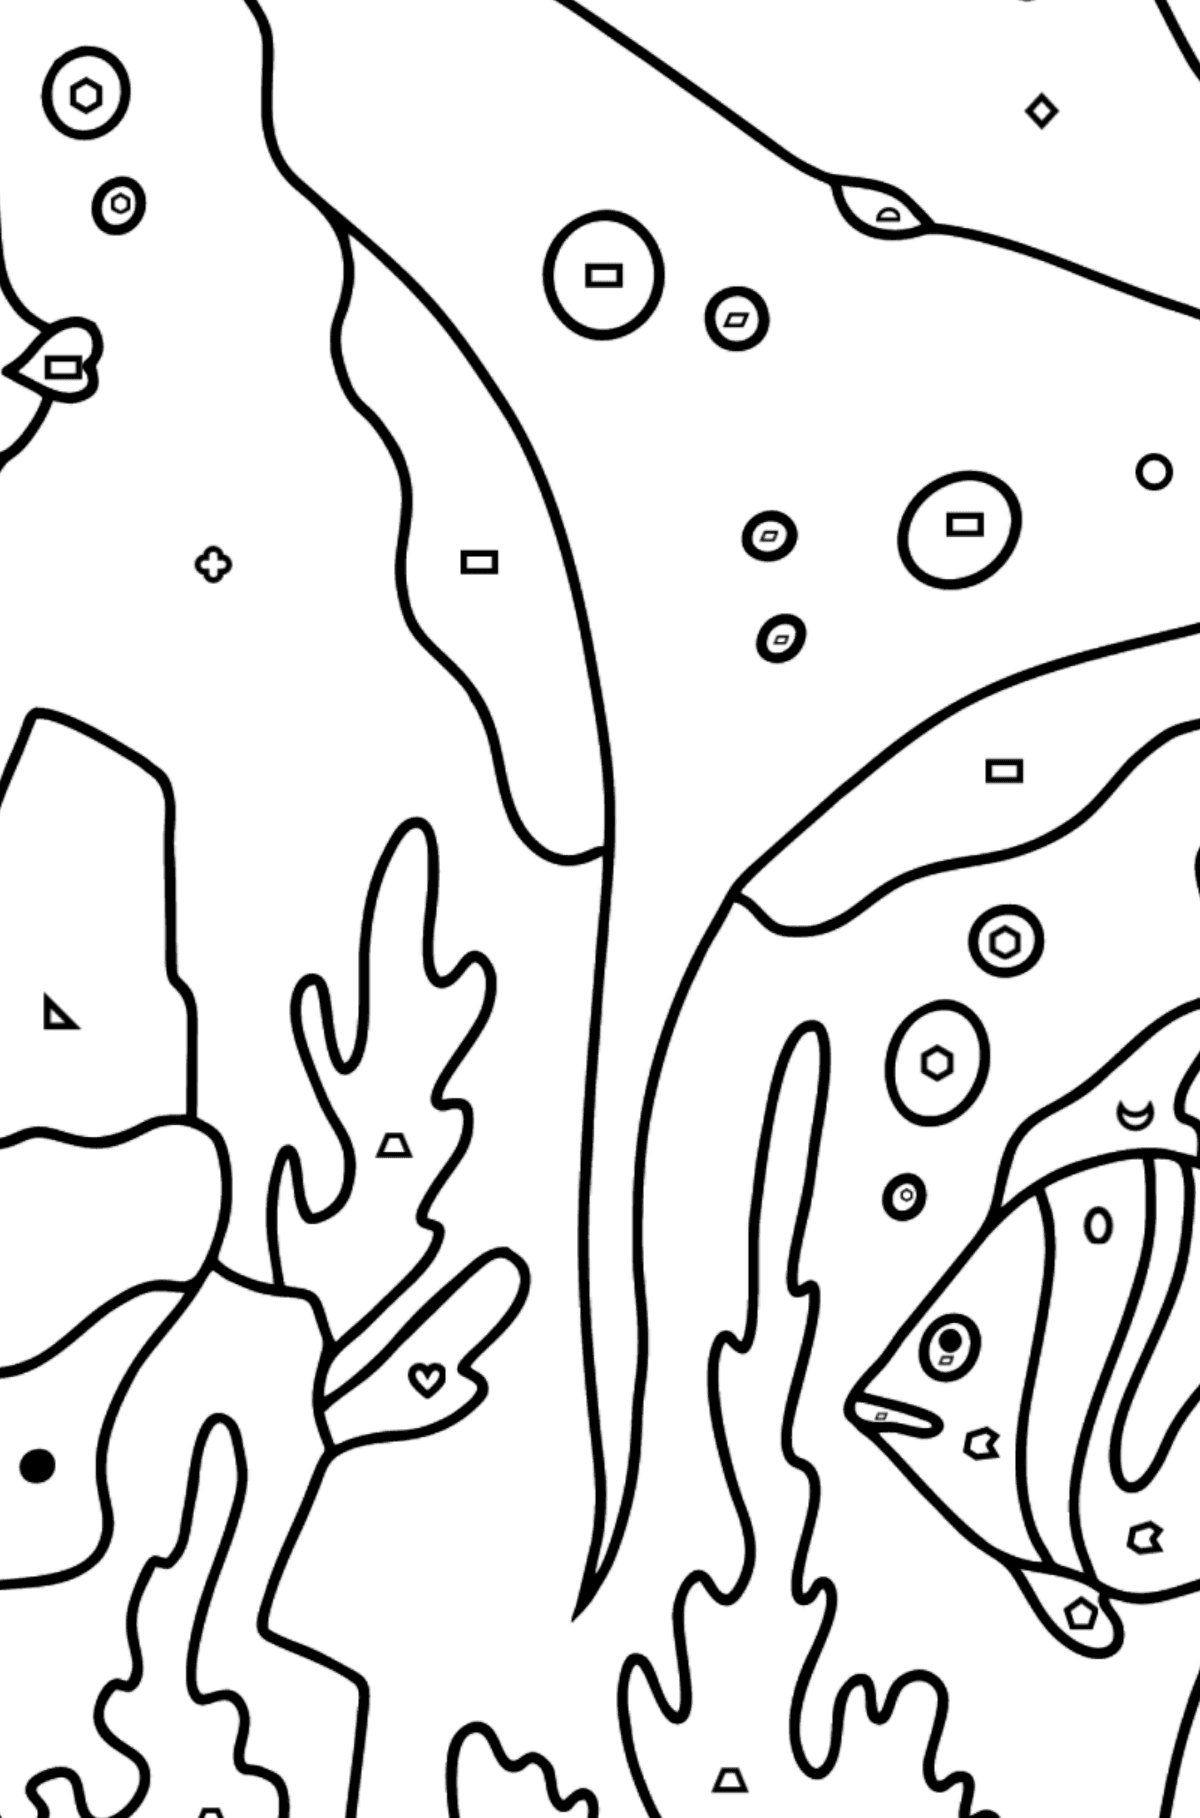 Tegning til fargelegging fisk og en rokke (vanskelig) - Fargelegge etter geometriske former for barn